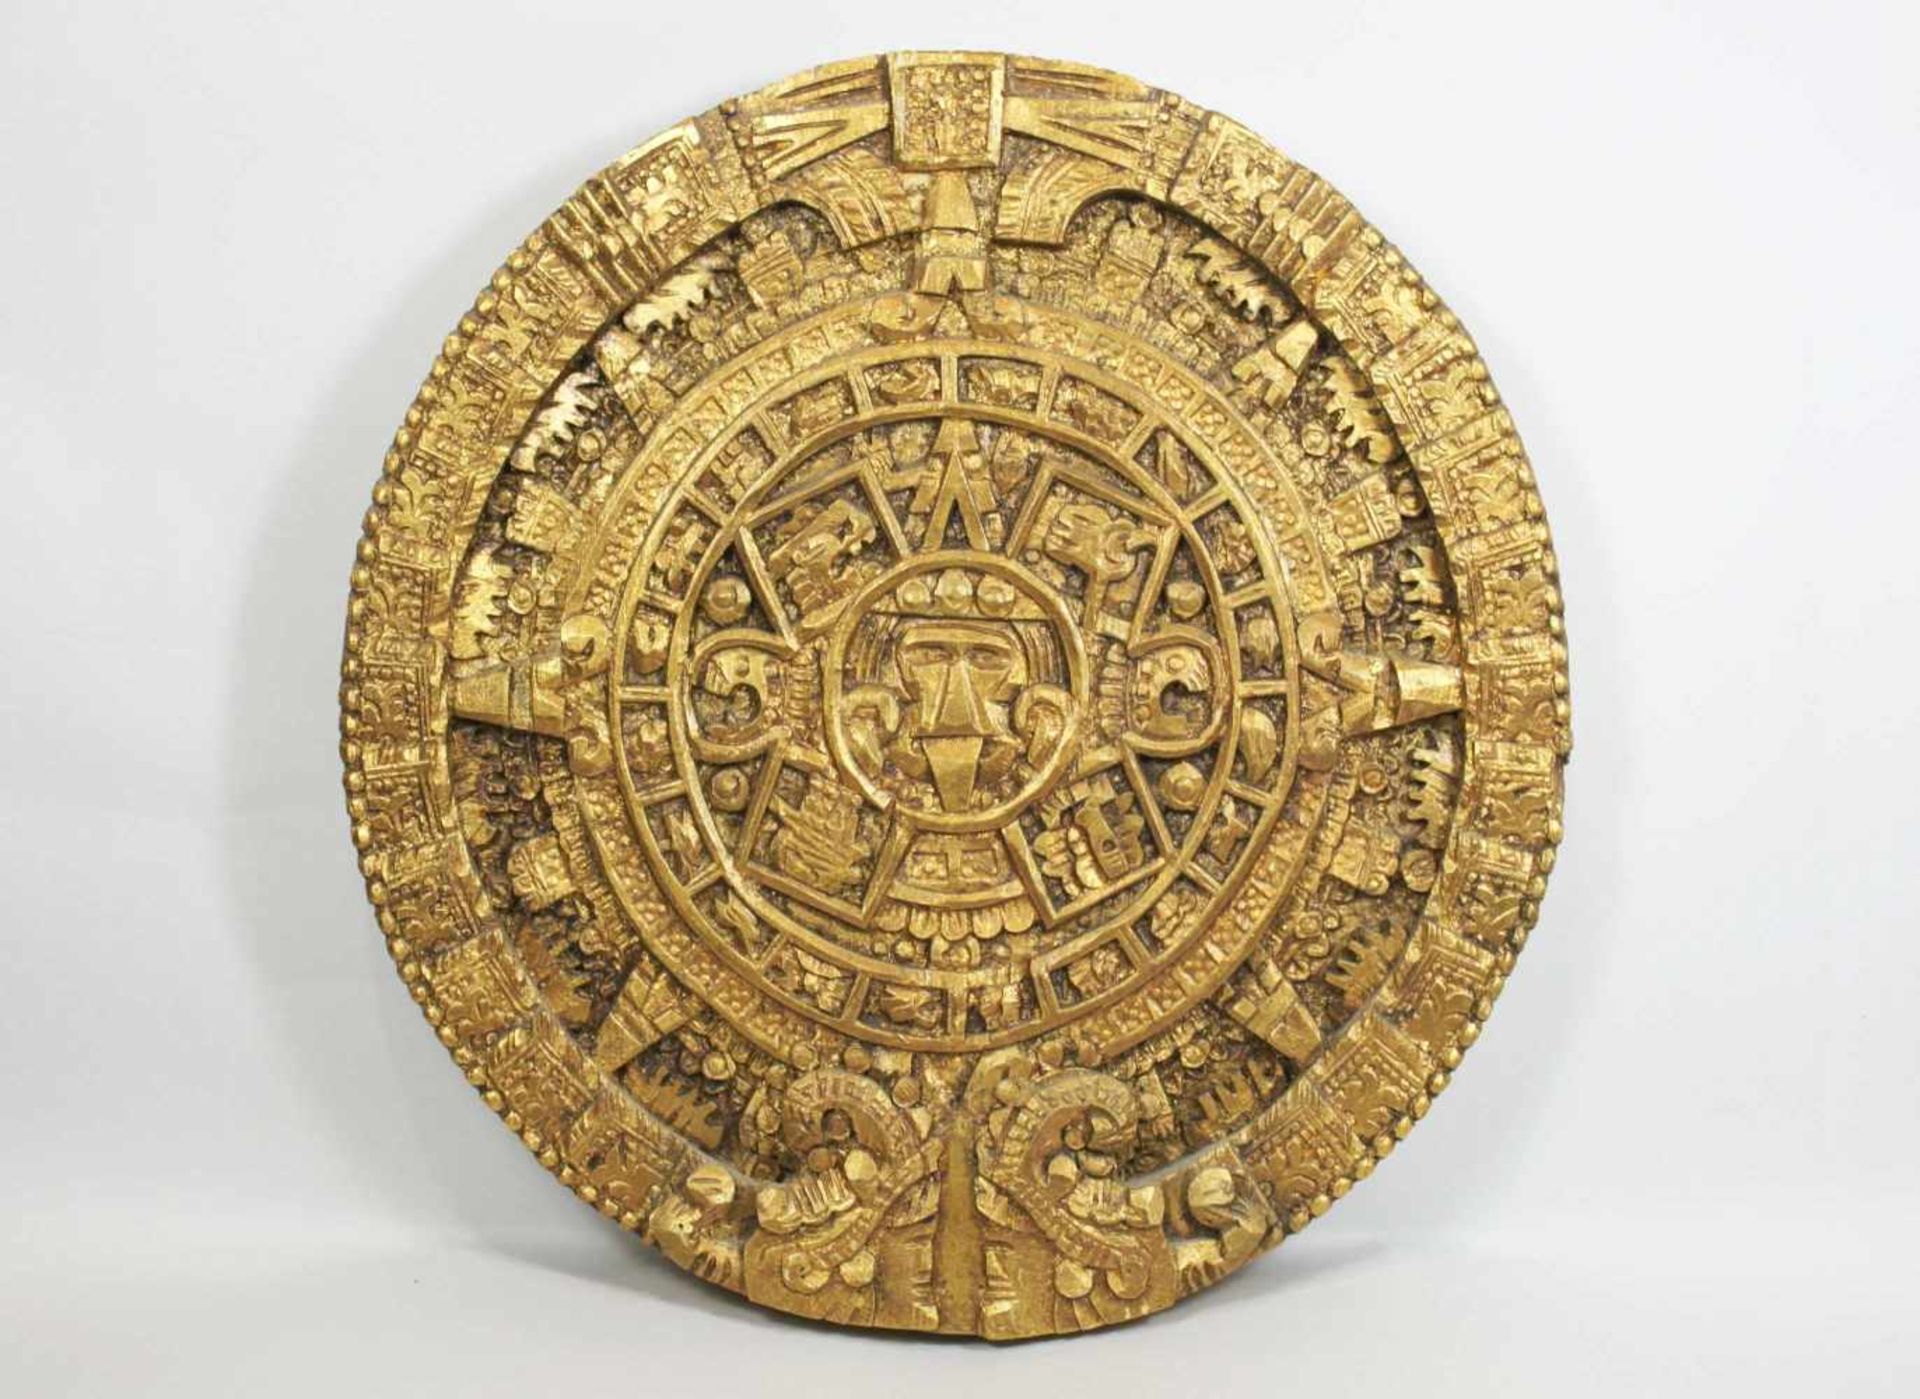 Goldene Reliefscheibe mit der Nachahmung des Maya Kalenders, Holz, geschnitzt. Maße: 36 x 35 x 3,5